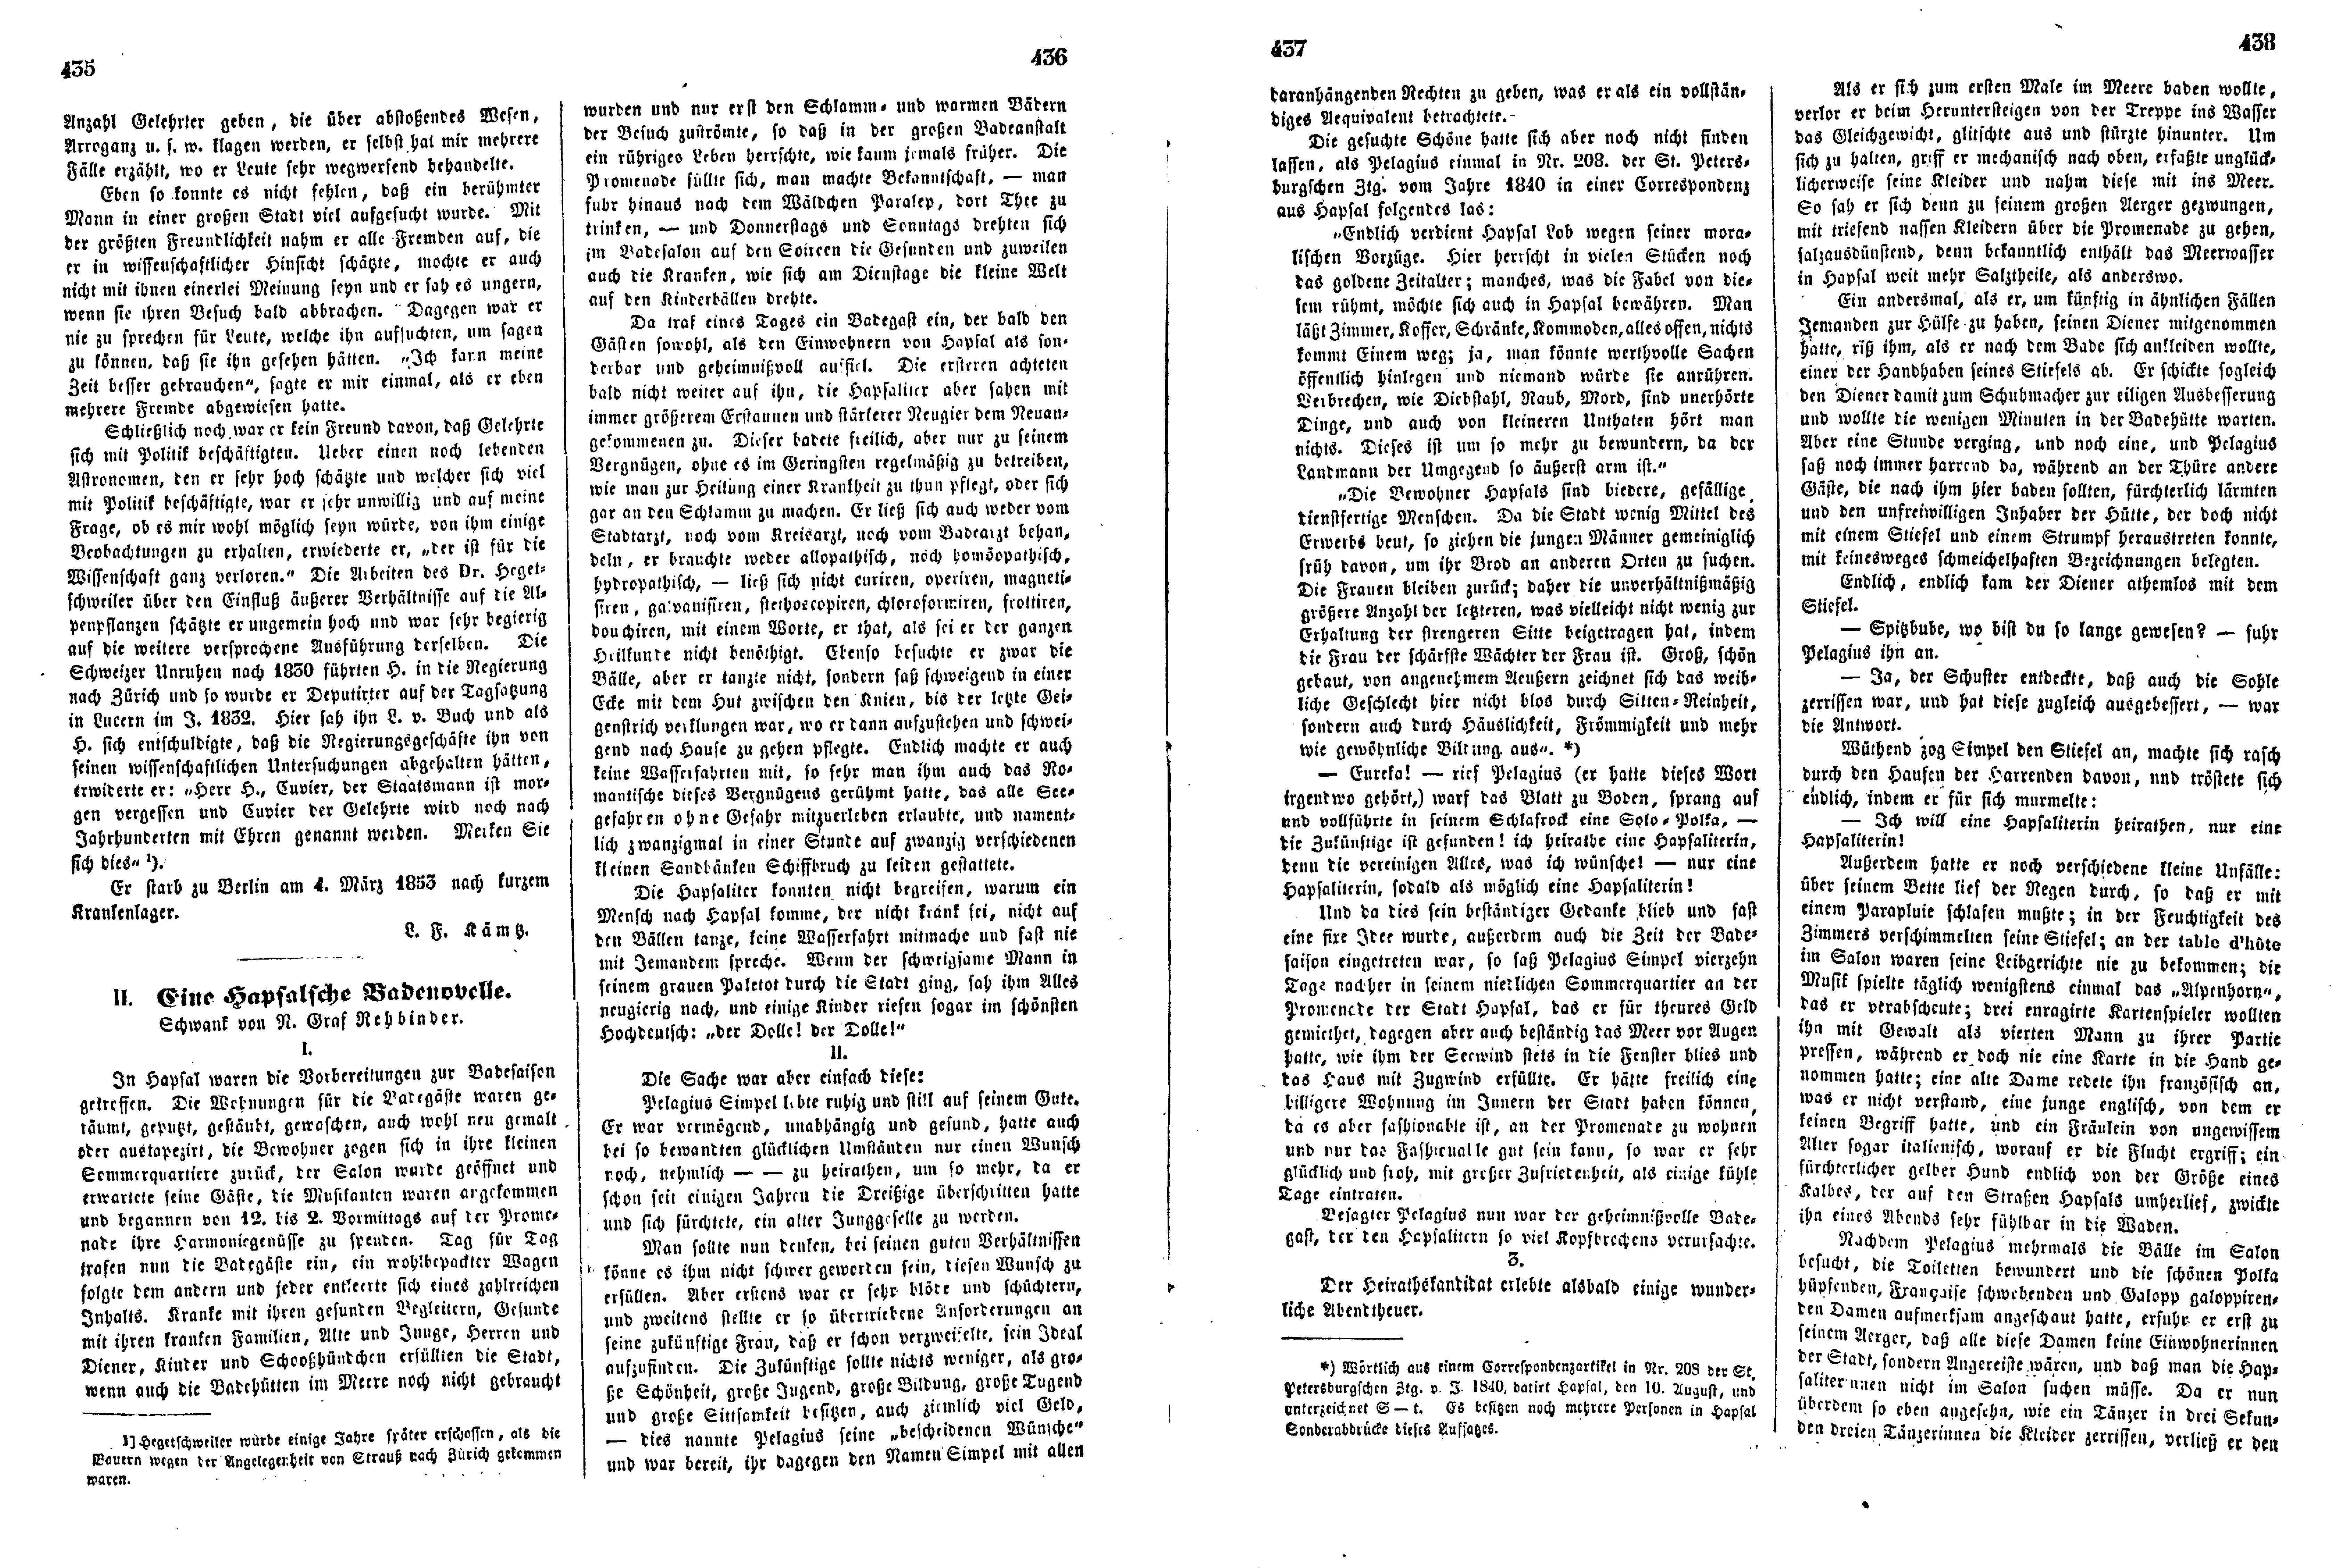 Das Inland [18] (1853) | 119. (435-438) Haupttext